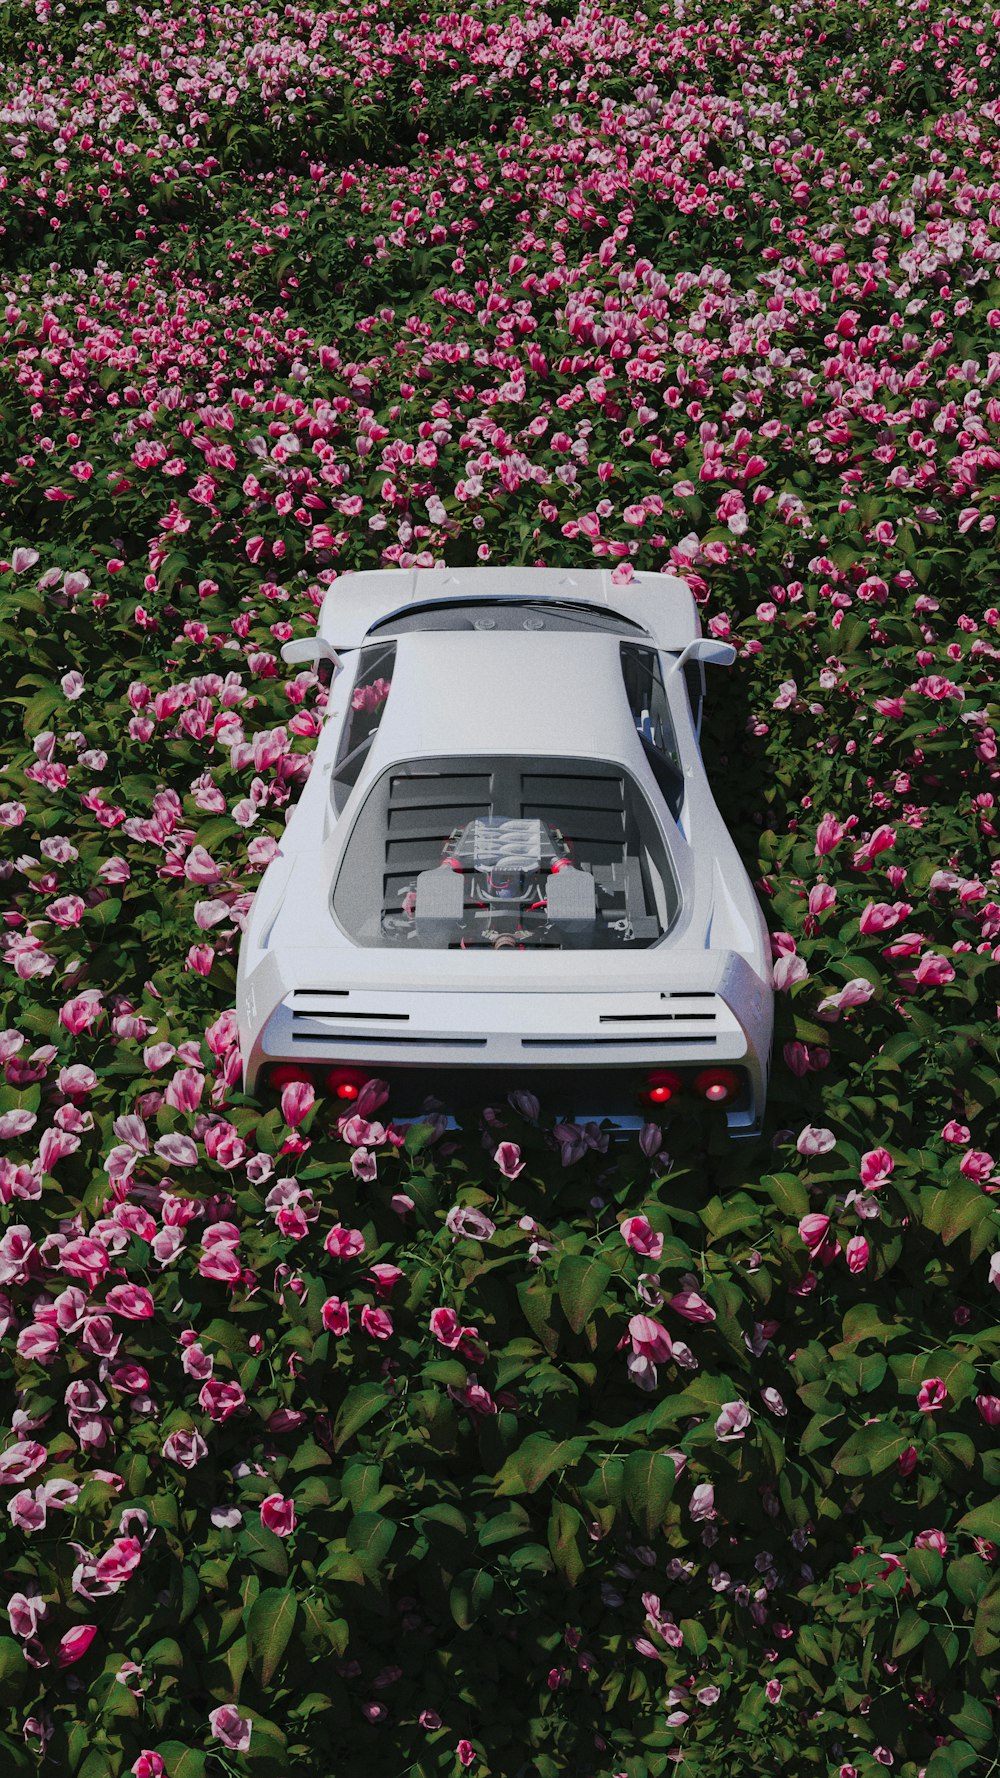 Une voiture est garée dans un champ de fleurs